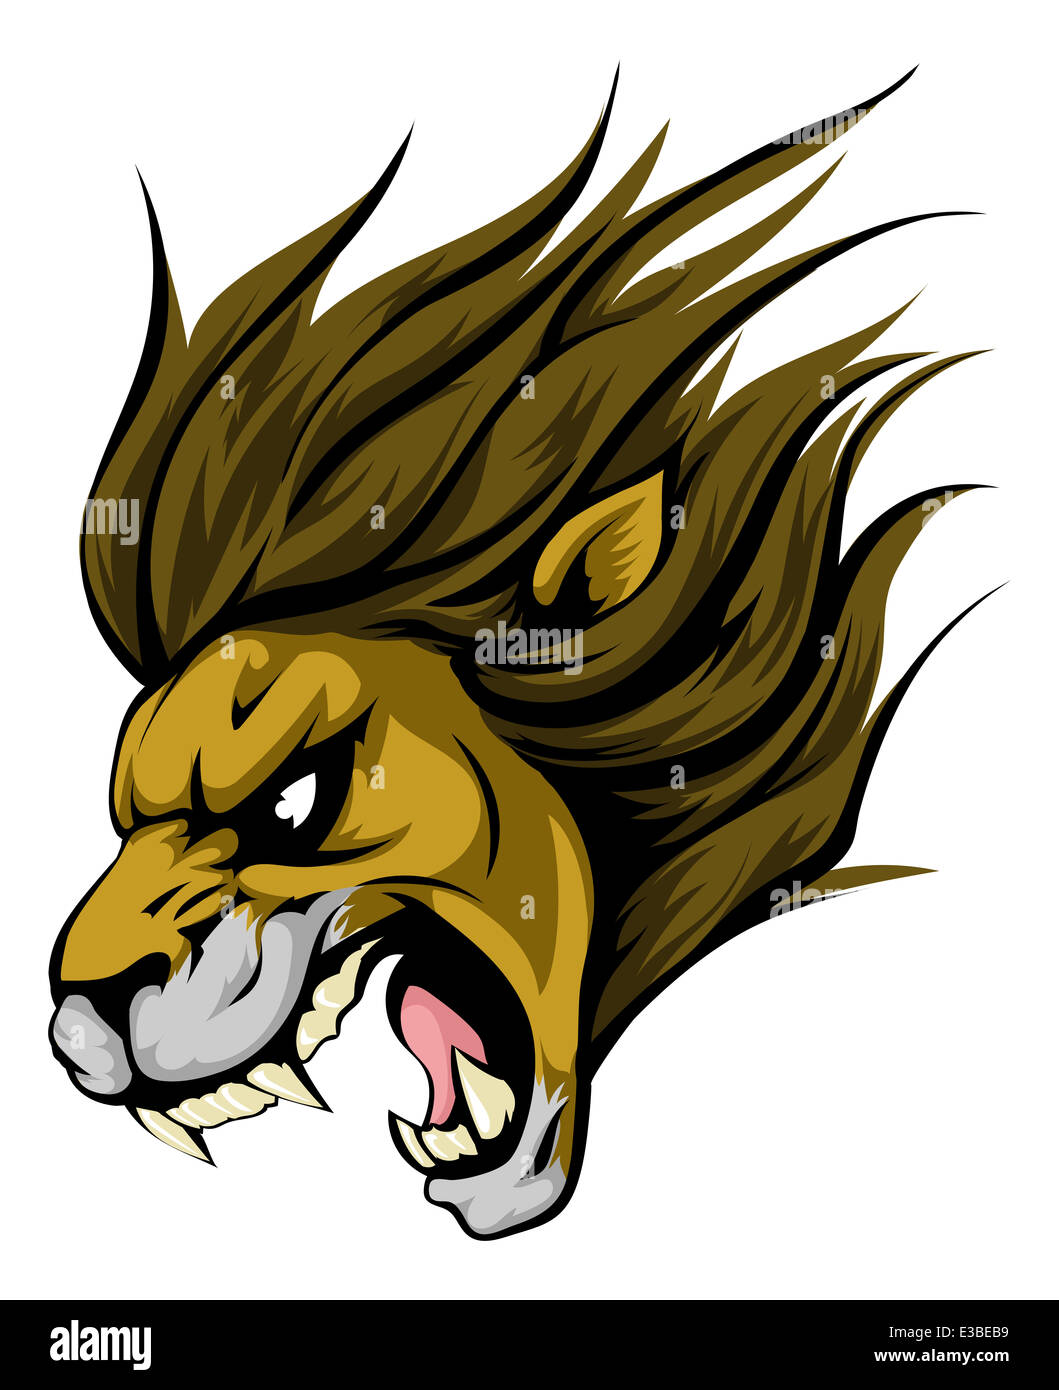 Fierce cartoon lion Royalty Free Vector Image - VectorStock